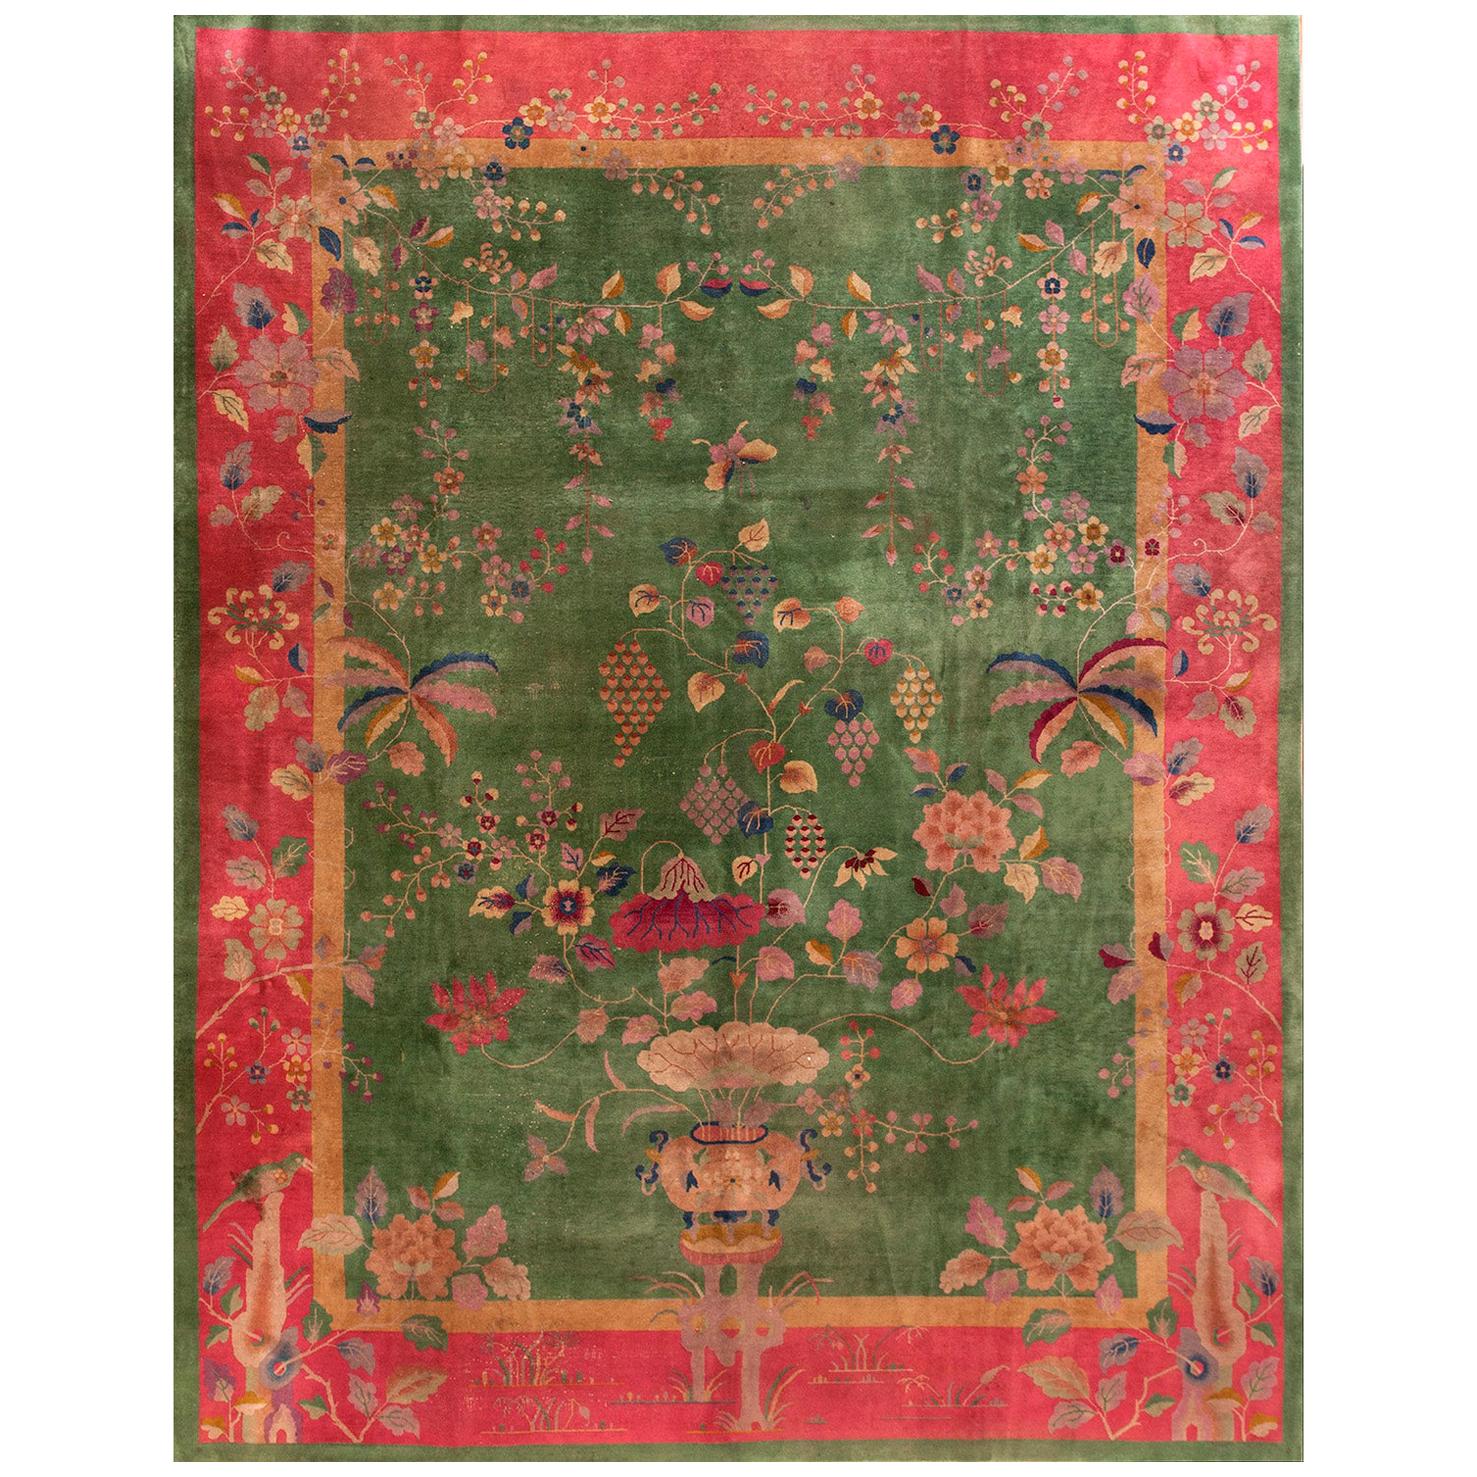 Chinesischer Art-Déco-Teppich aus den 1920er Jahren ( 8'10" x 11'6" - 270 x 350)